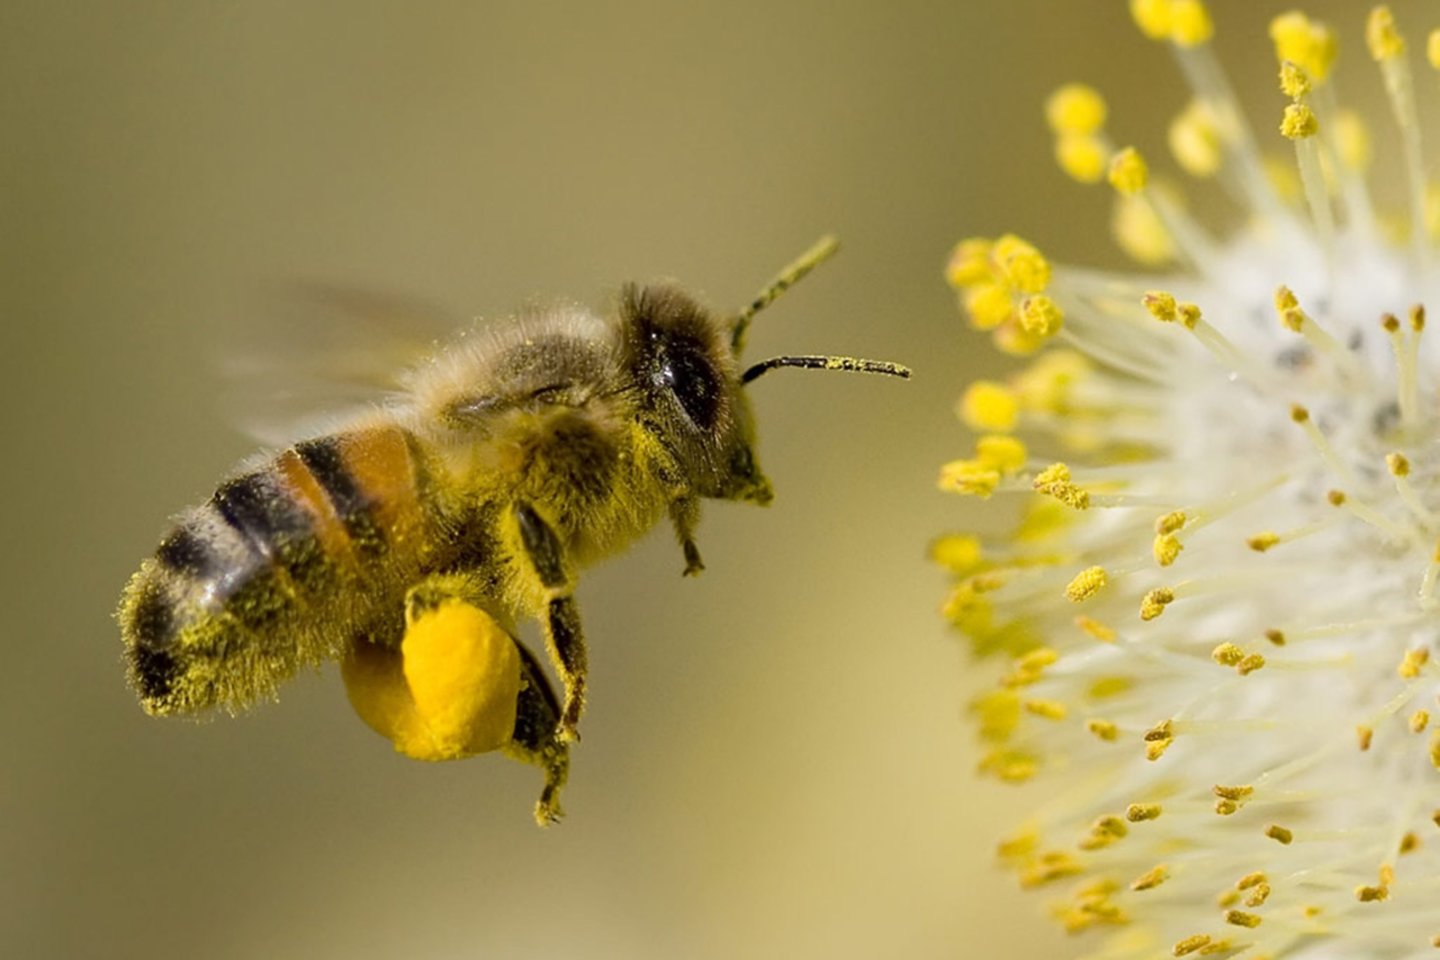  Nyderlandų mokslininkai išmokė bites atpažinti COVID-19 pagal kvapą<br>123rf nuotr.